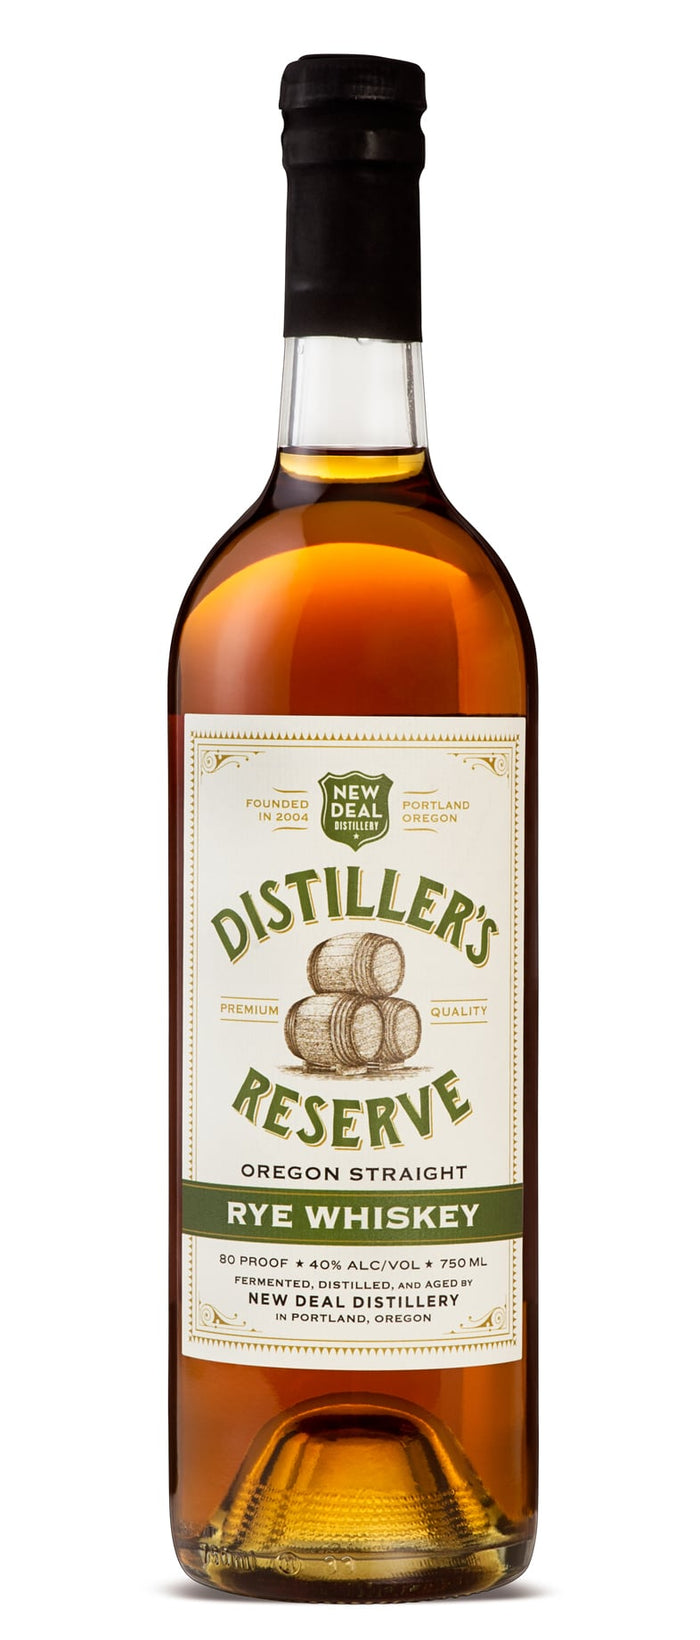 New Deal Distiller’s Reserve Oregon Straight Rye Whiskey